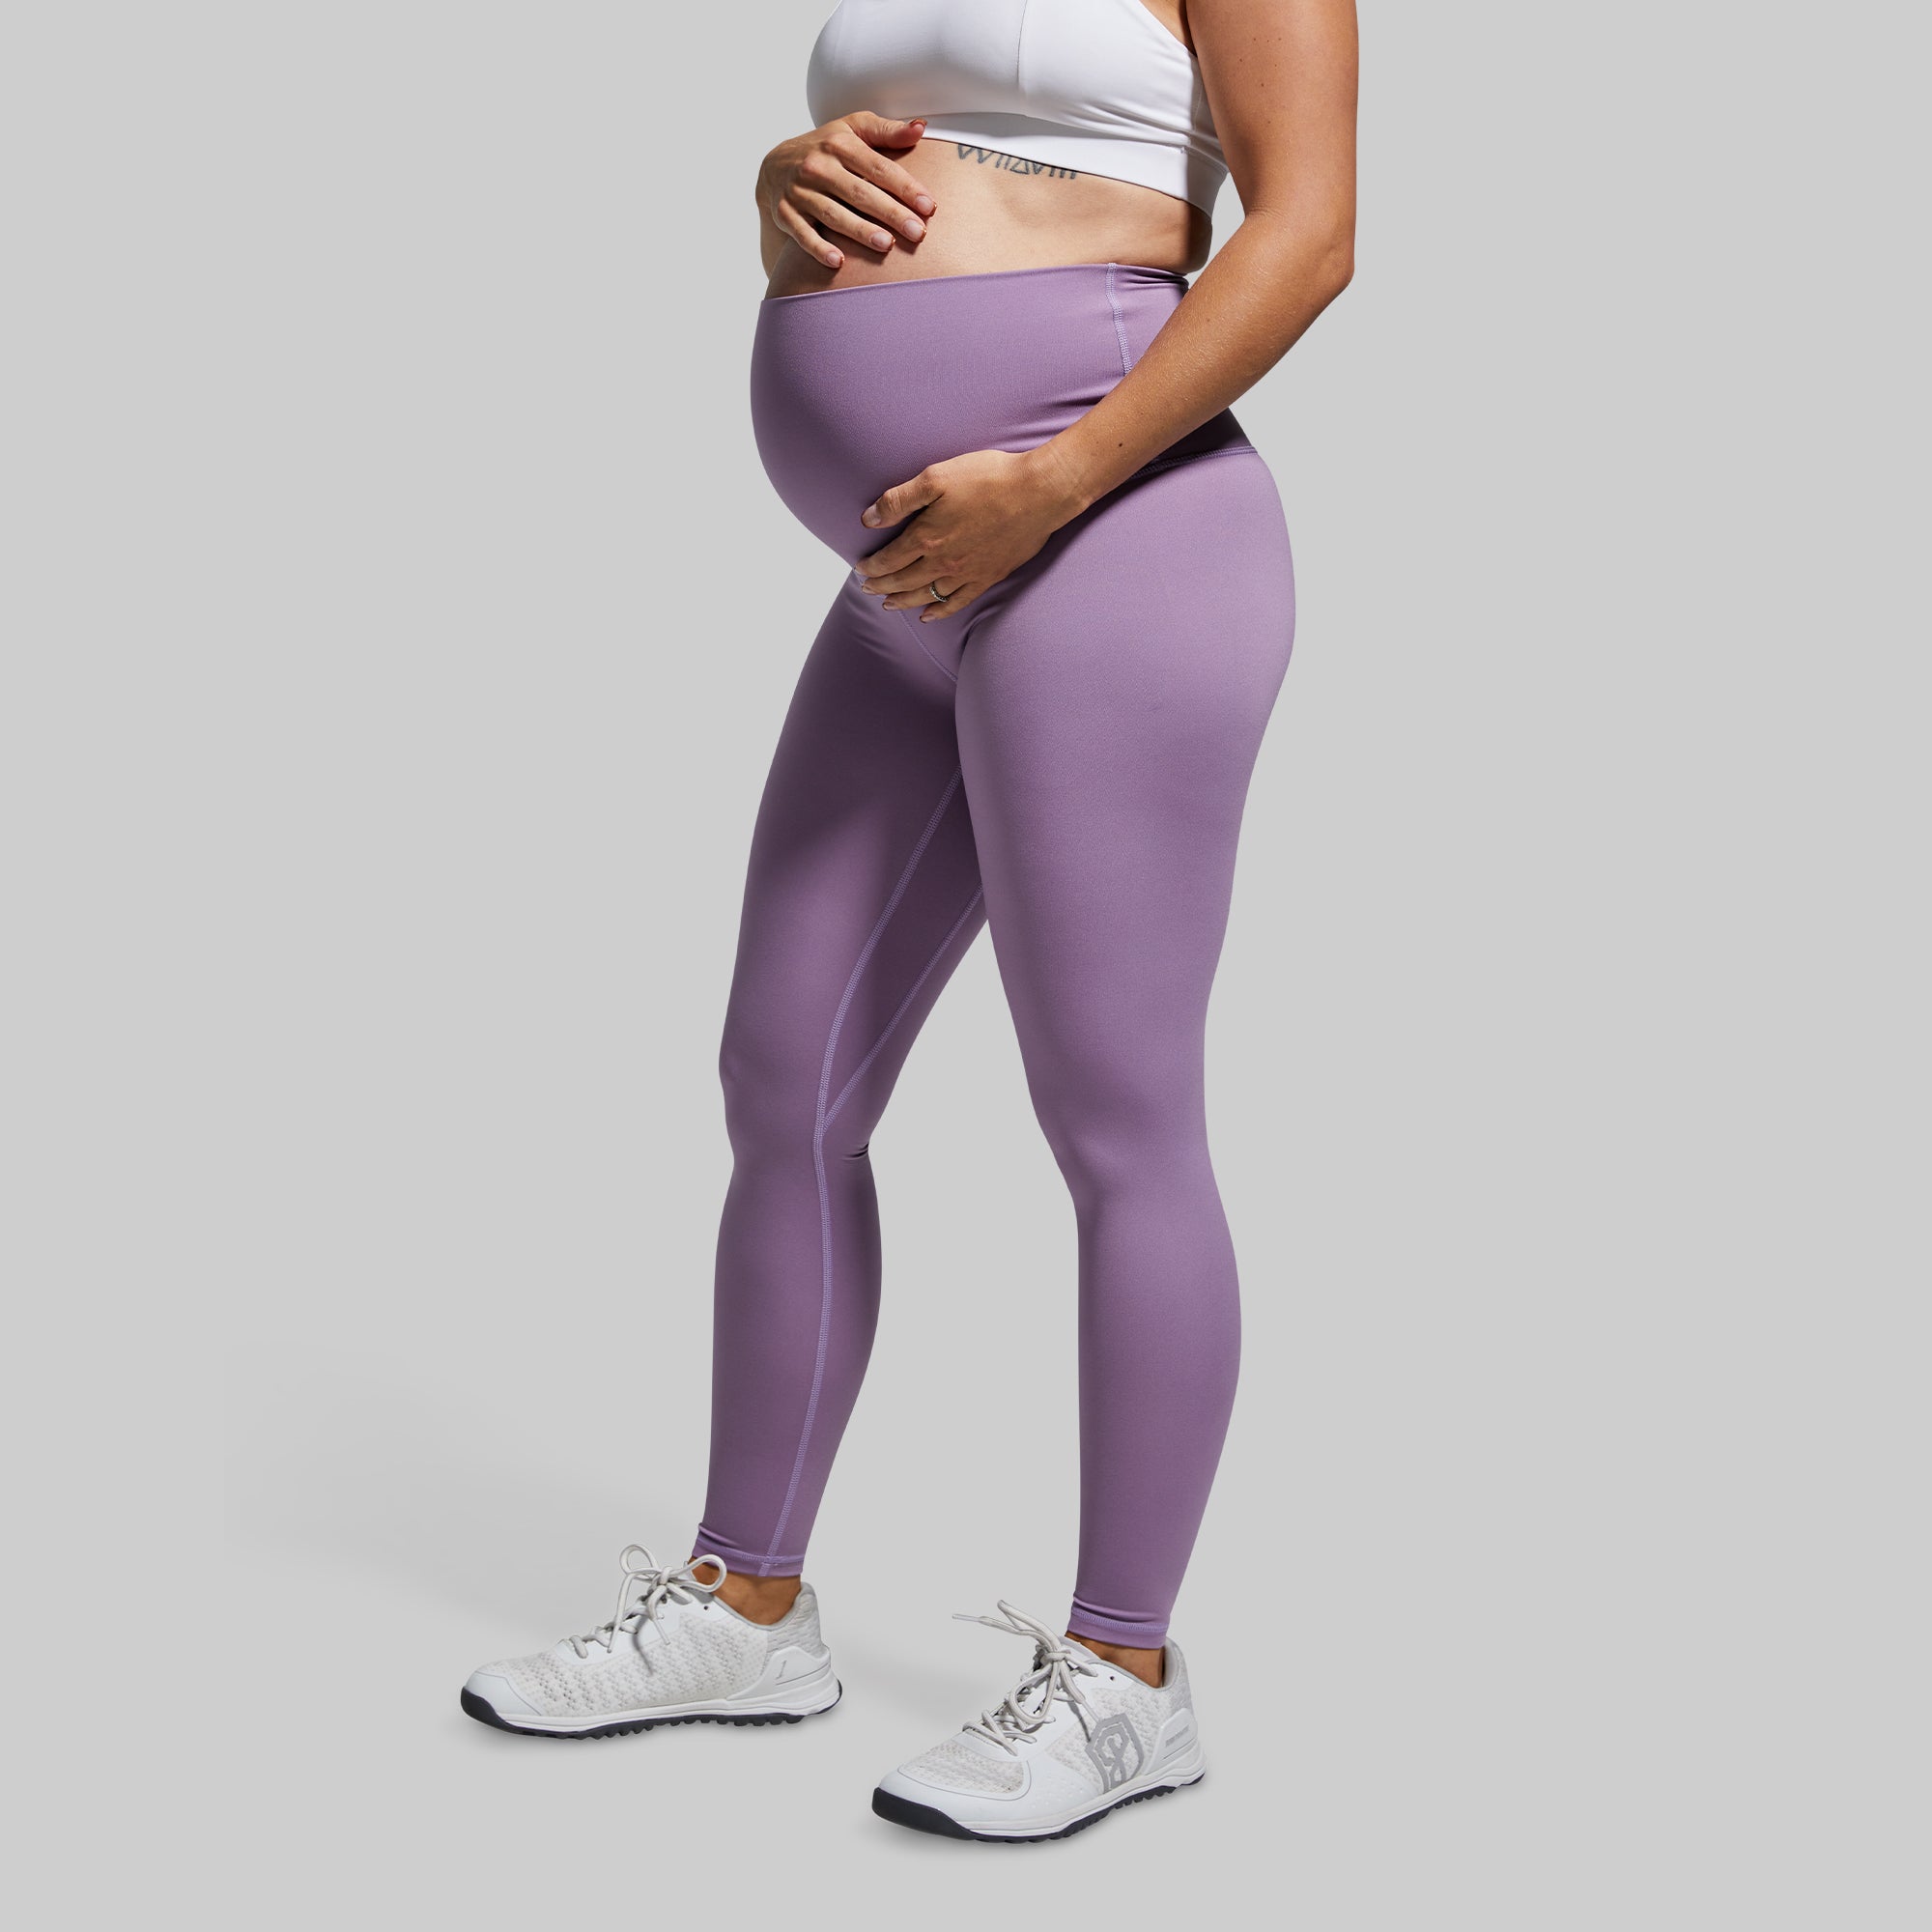 Women's Purple Workout Leggings for Pregnancy – Born Primitive EU